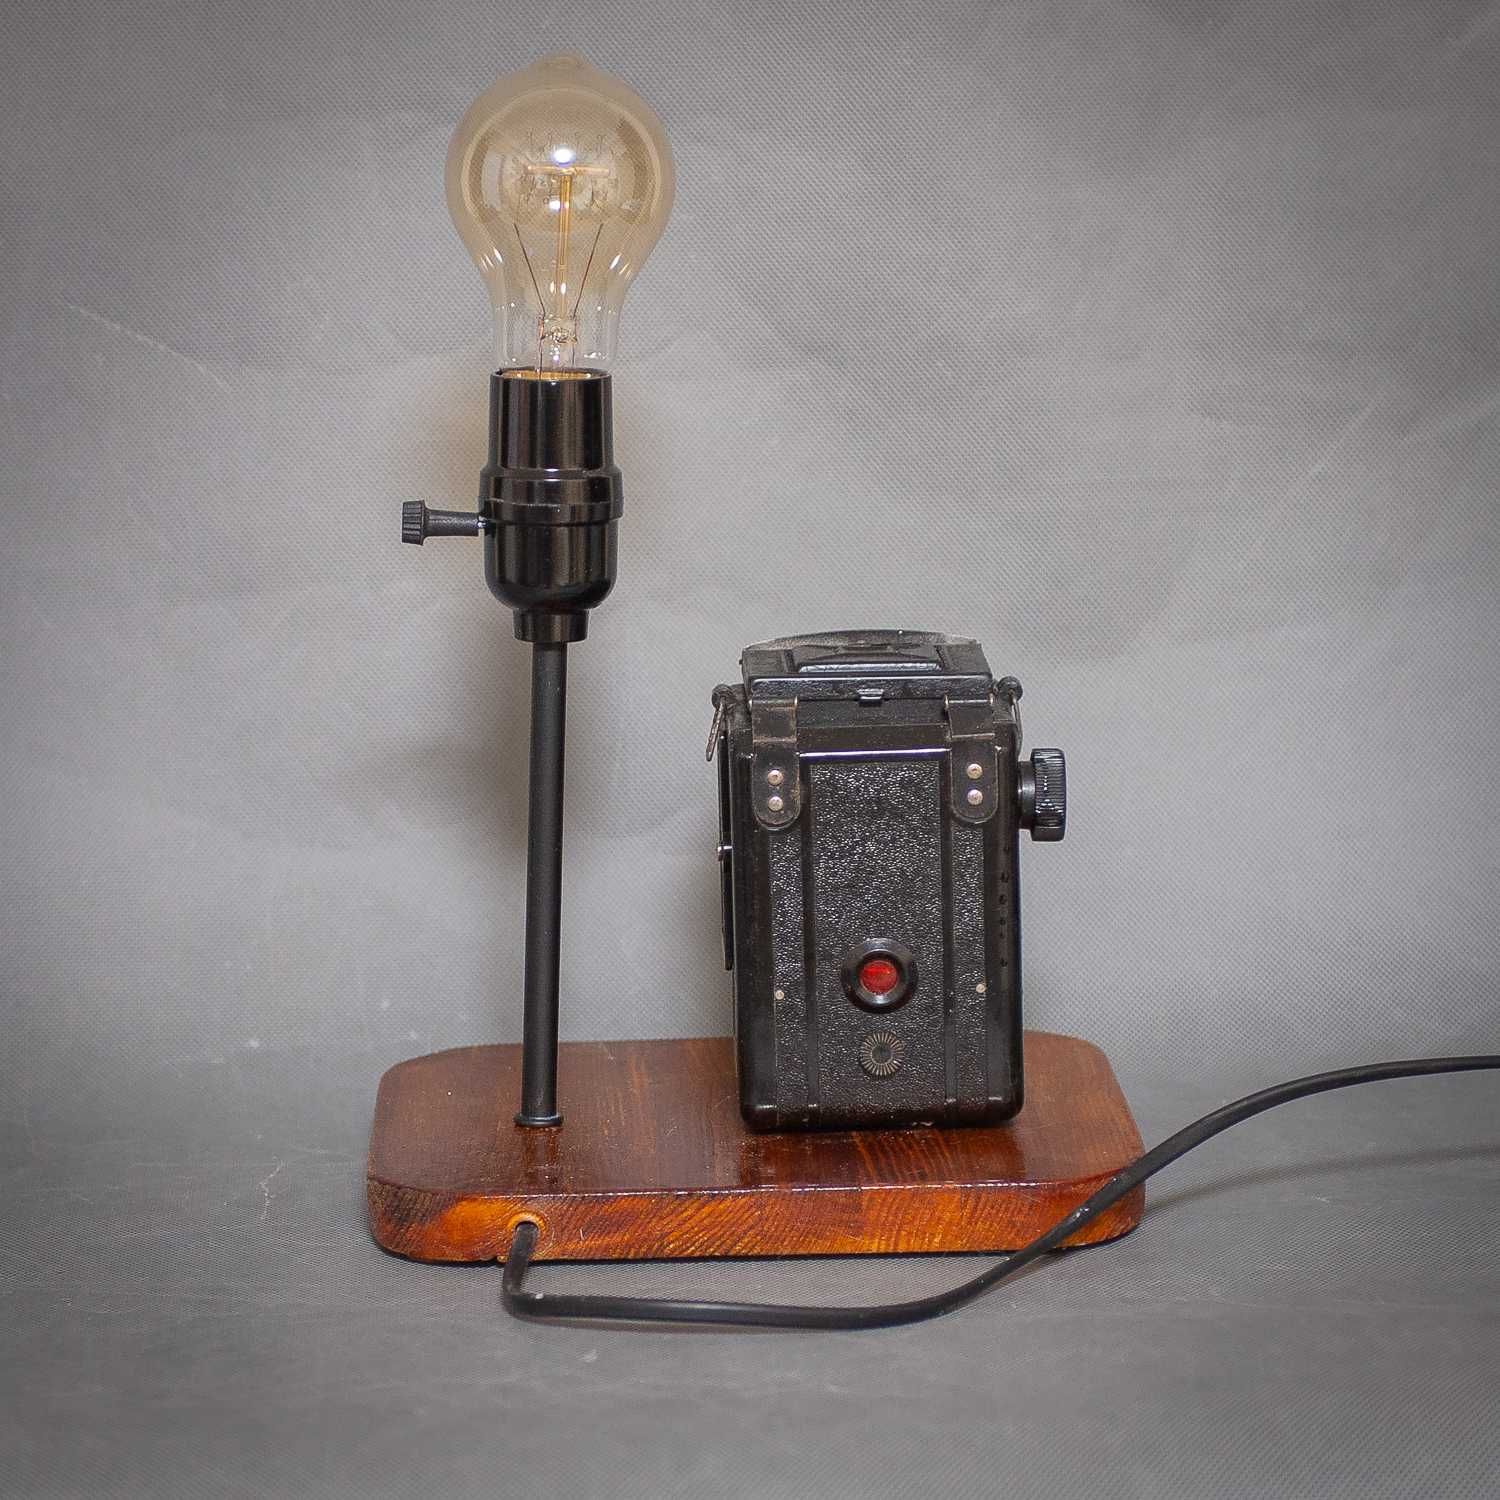 Оригинальный и креативный светильник в стиле Лофт с  лампой Эдиссона.